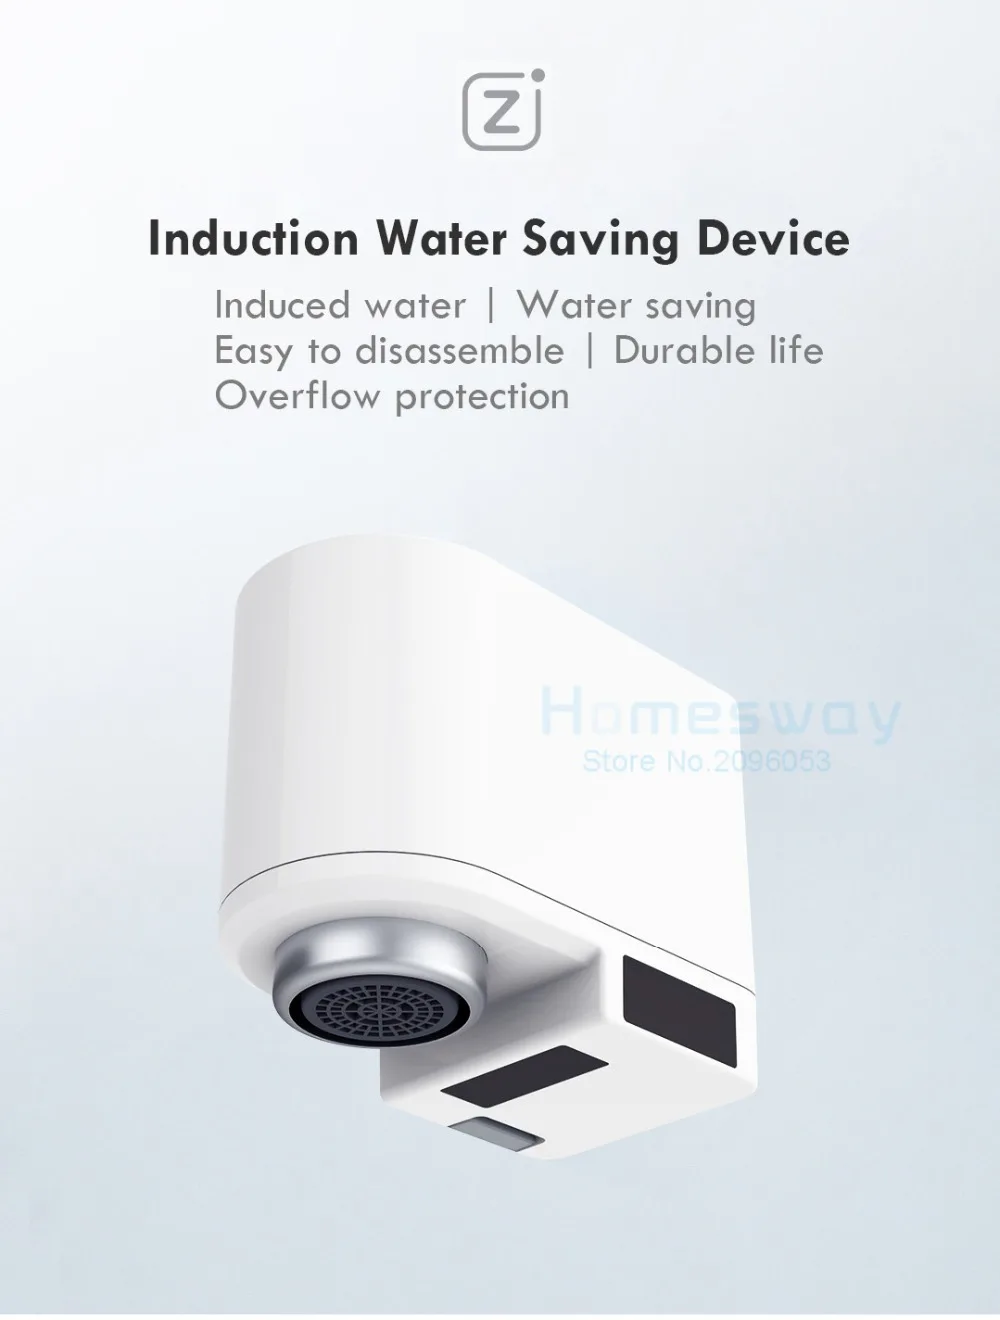 Xiaomi ZJ автоматическое сенсорное инфракрасное Индукционное устройство для экономии воды для кухни ванной раковины кран IPX6 защита от перелива воды